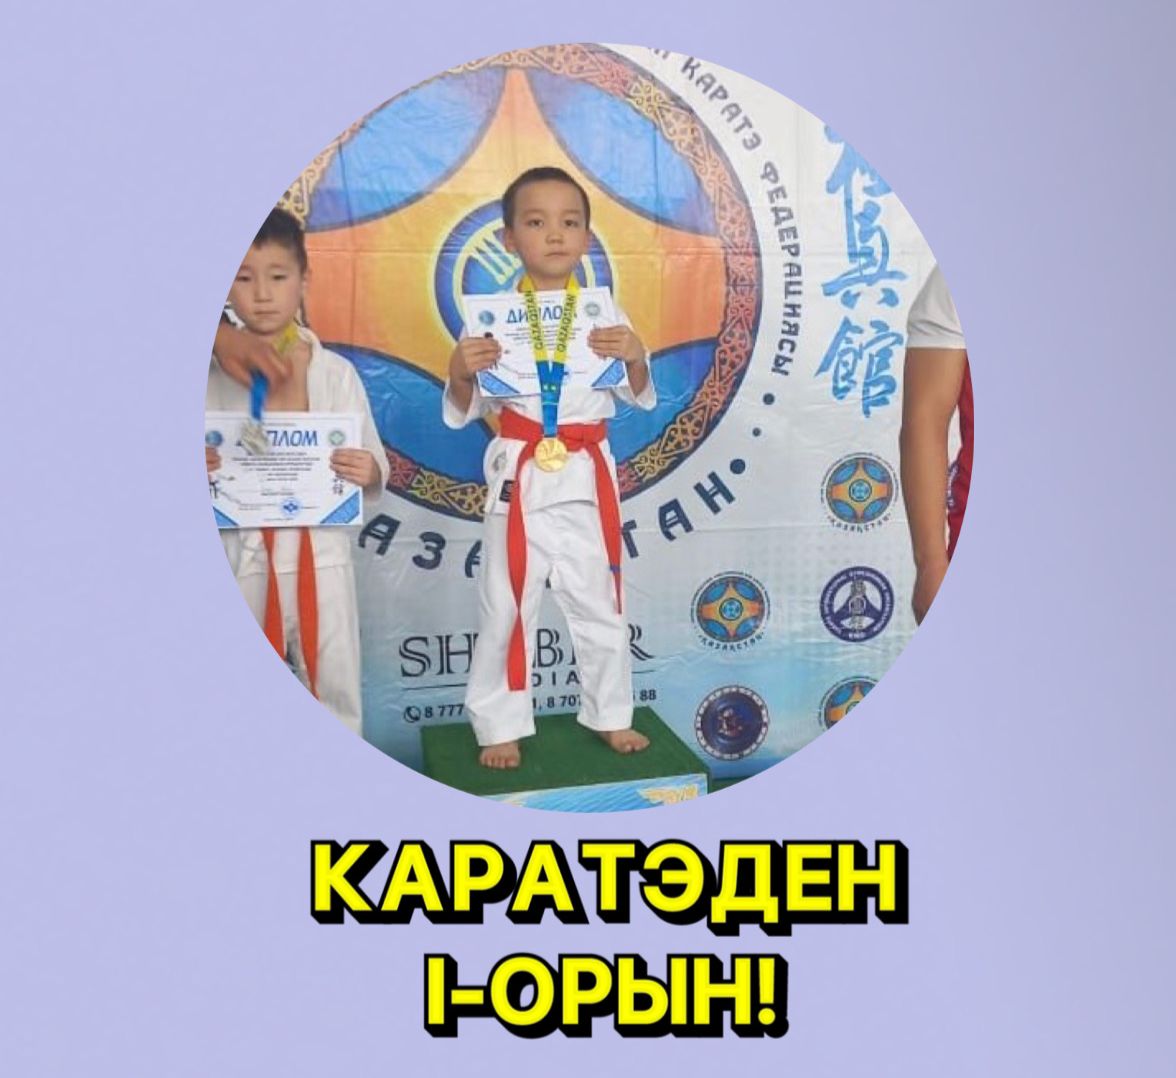 Үштерек орта мектебінің 1 А сынып оқушысы Муханов Сабыр “Киокушинкай -Кан Каратэден” балалар,жасөспірімдер мен қыздар арасында Almaty regionның біріншілінде  23 кг ( дейінгі , жоғары)салмағында 6-7 жас аралығында 1 -орын алды